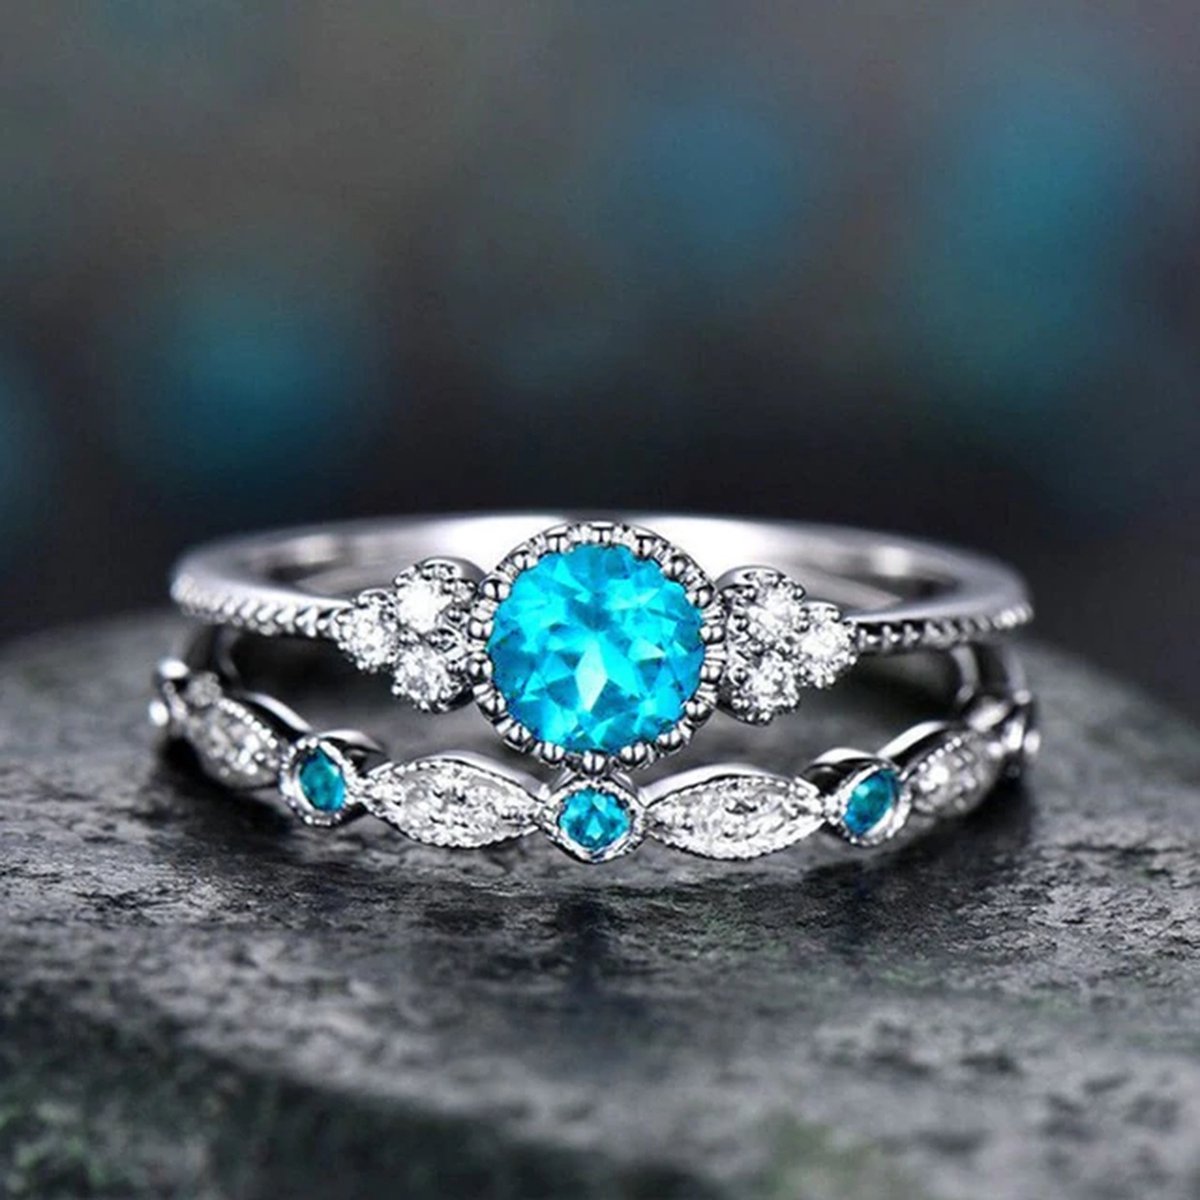 Ring met edelsteen (set) - Ring met blauwe steen - Ring maat 17 zilver kleurig staal - Maat 55 ring dames ringen set van 2 - Aquamarijn